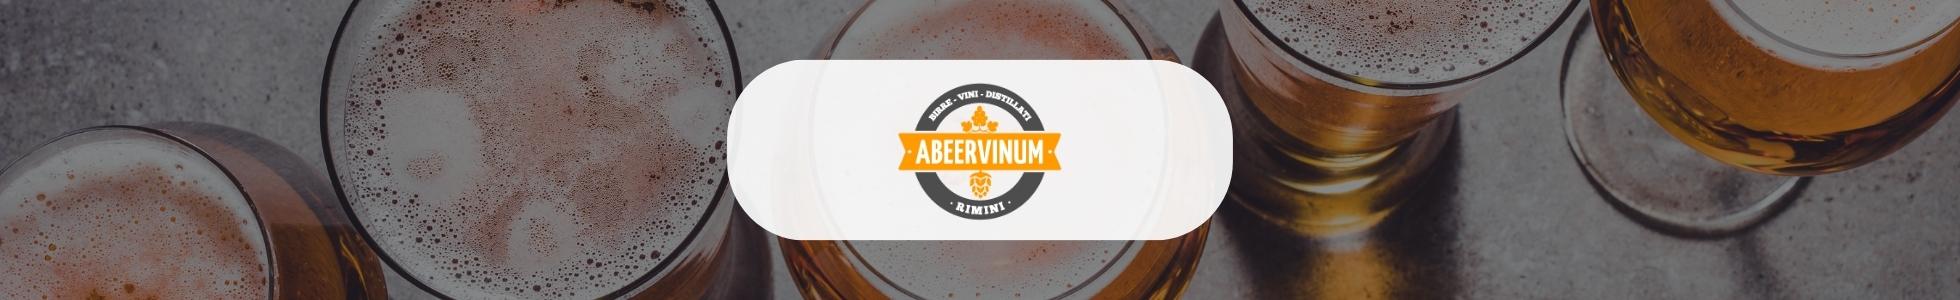 Abeervinum - shop online birre di ogni tipo da tutto il mondo